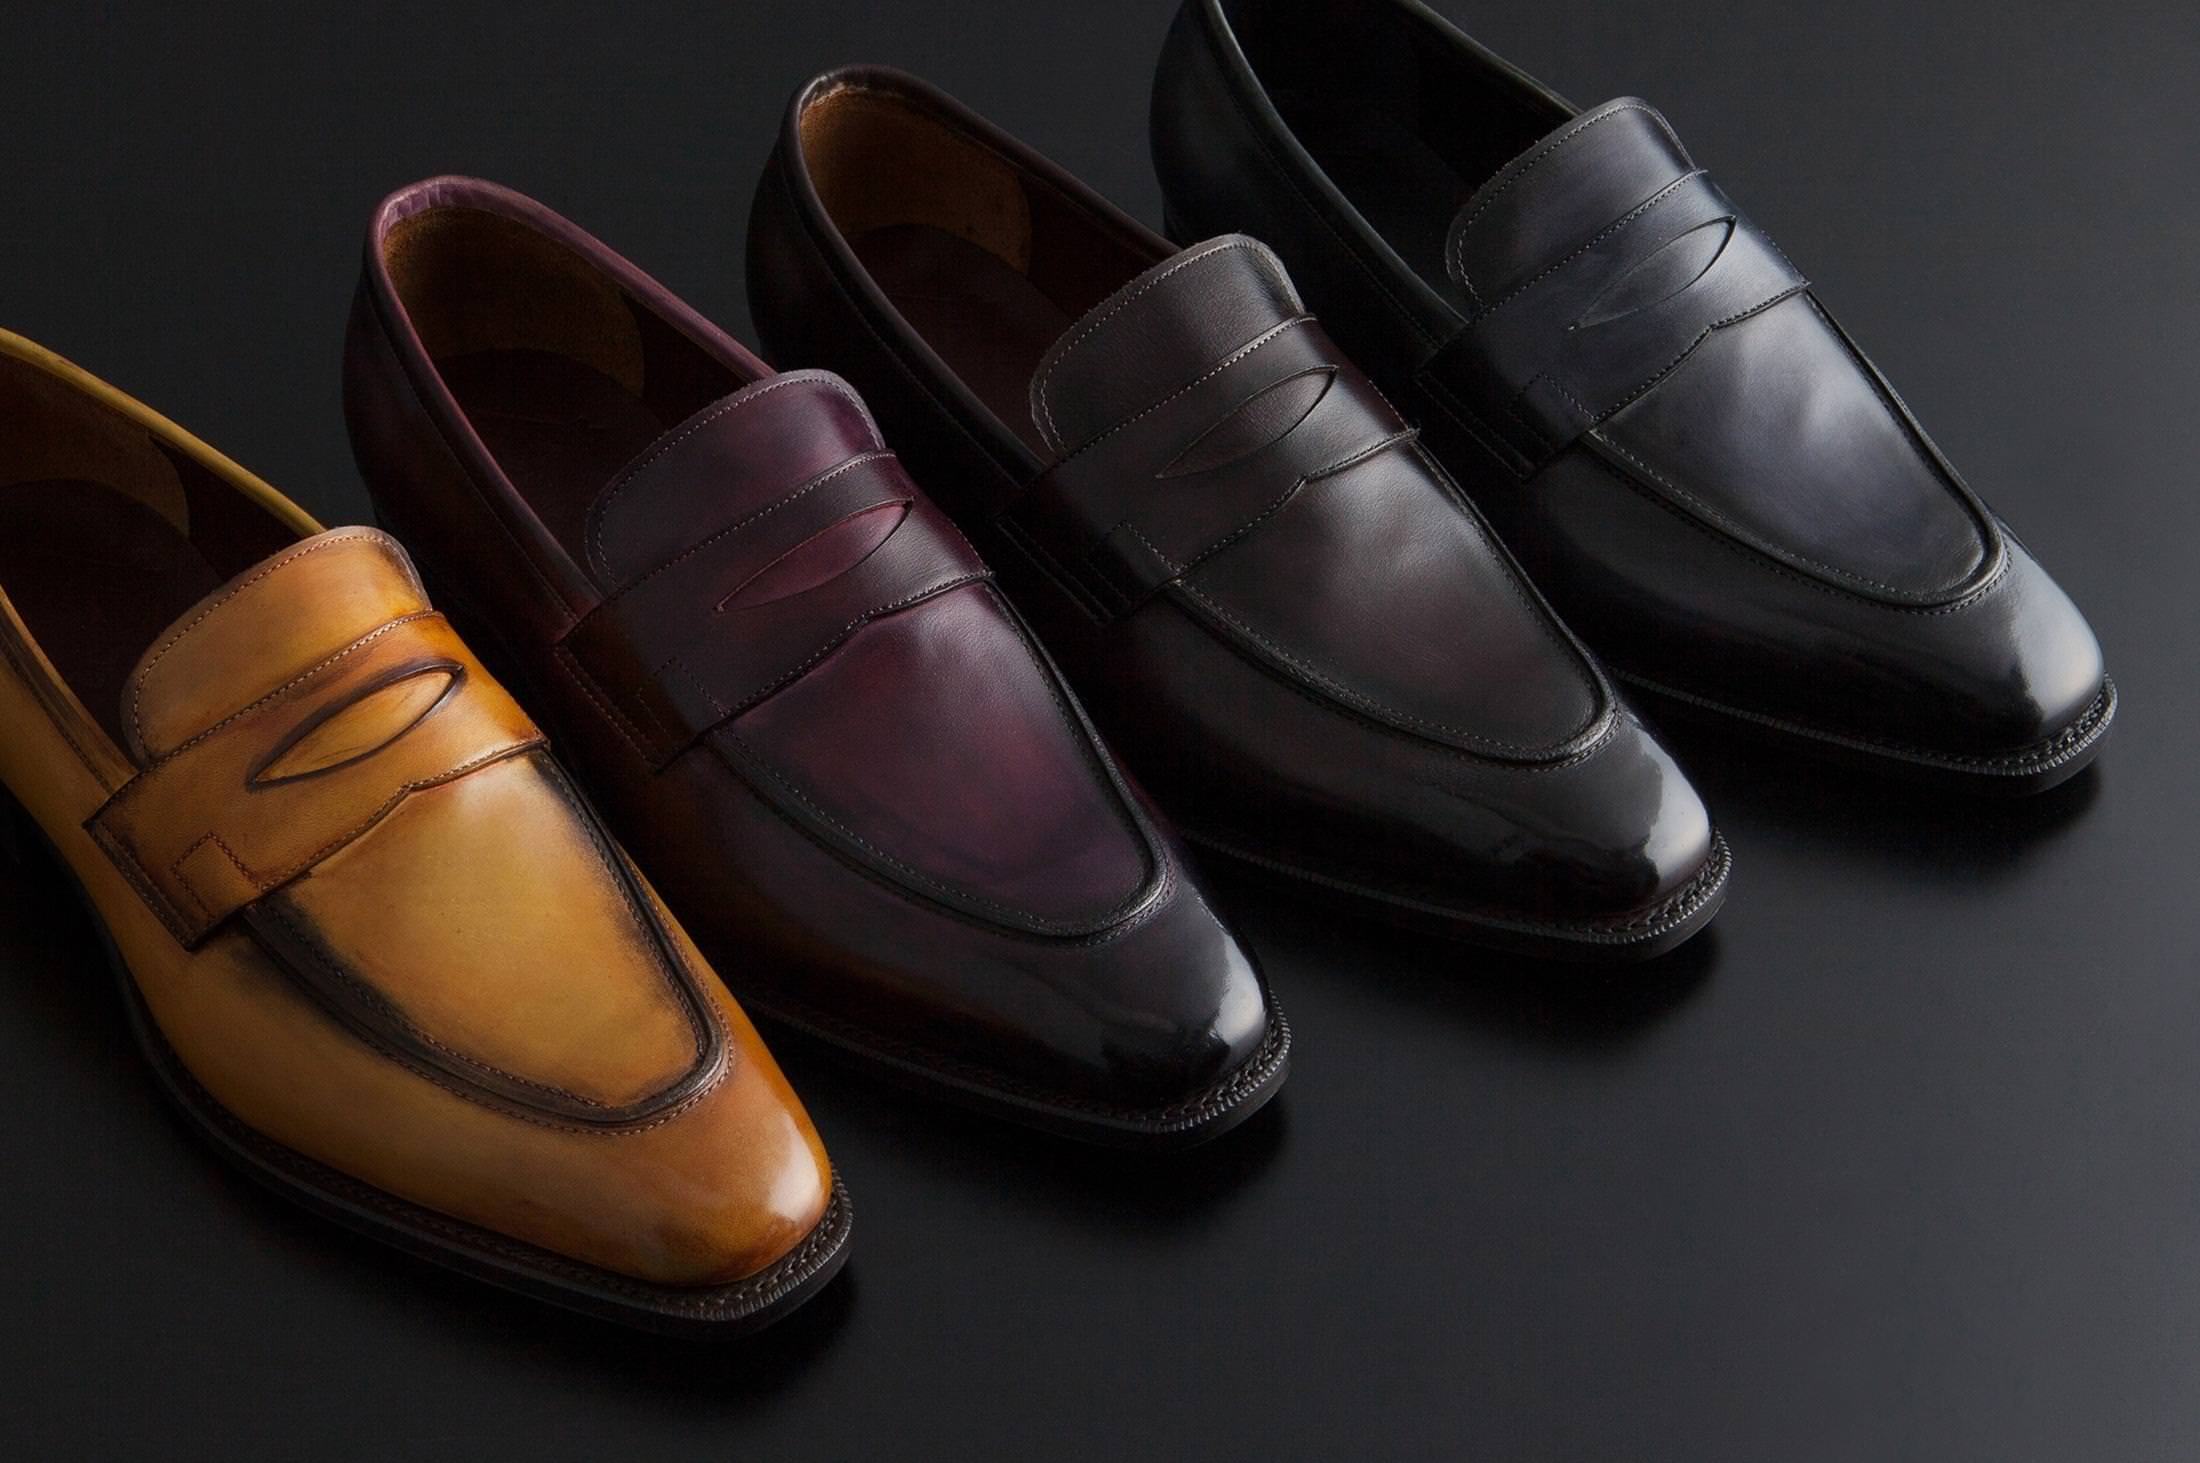 革靴のスペシャリティショップがこだわる、日本で生まれた格別ローファー。